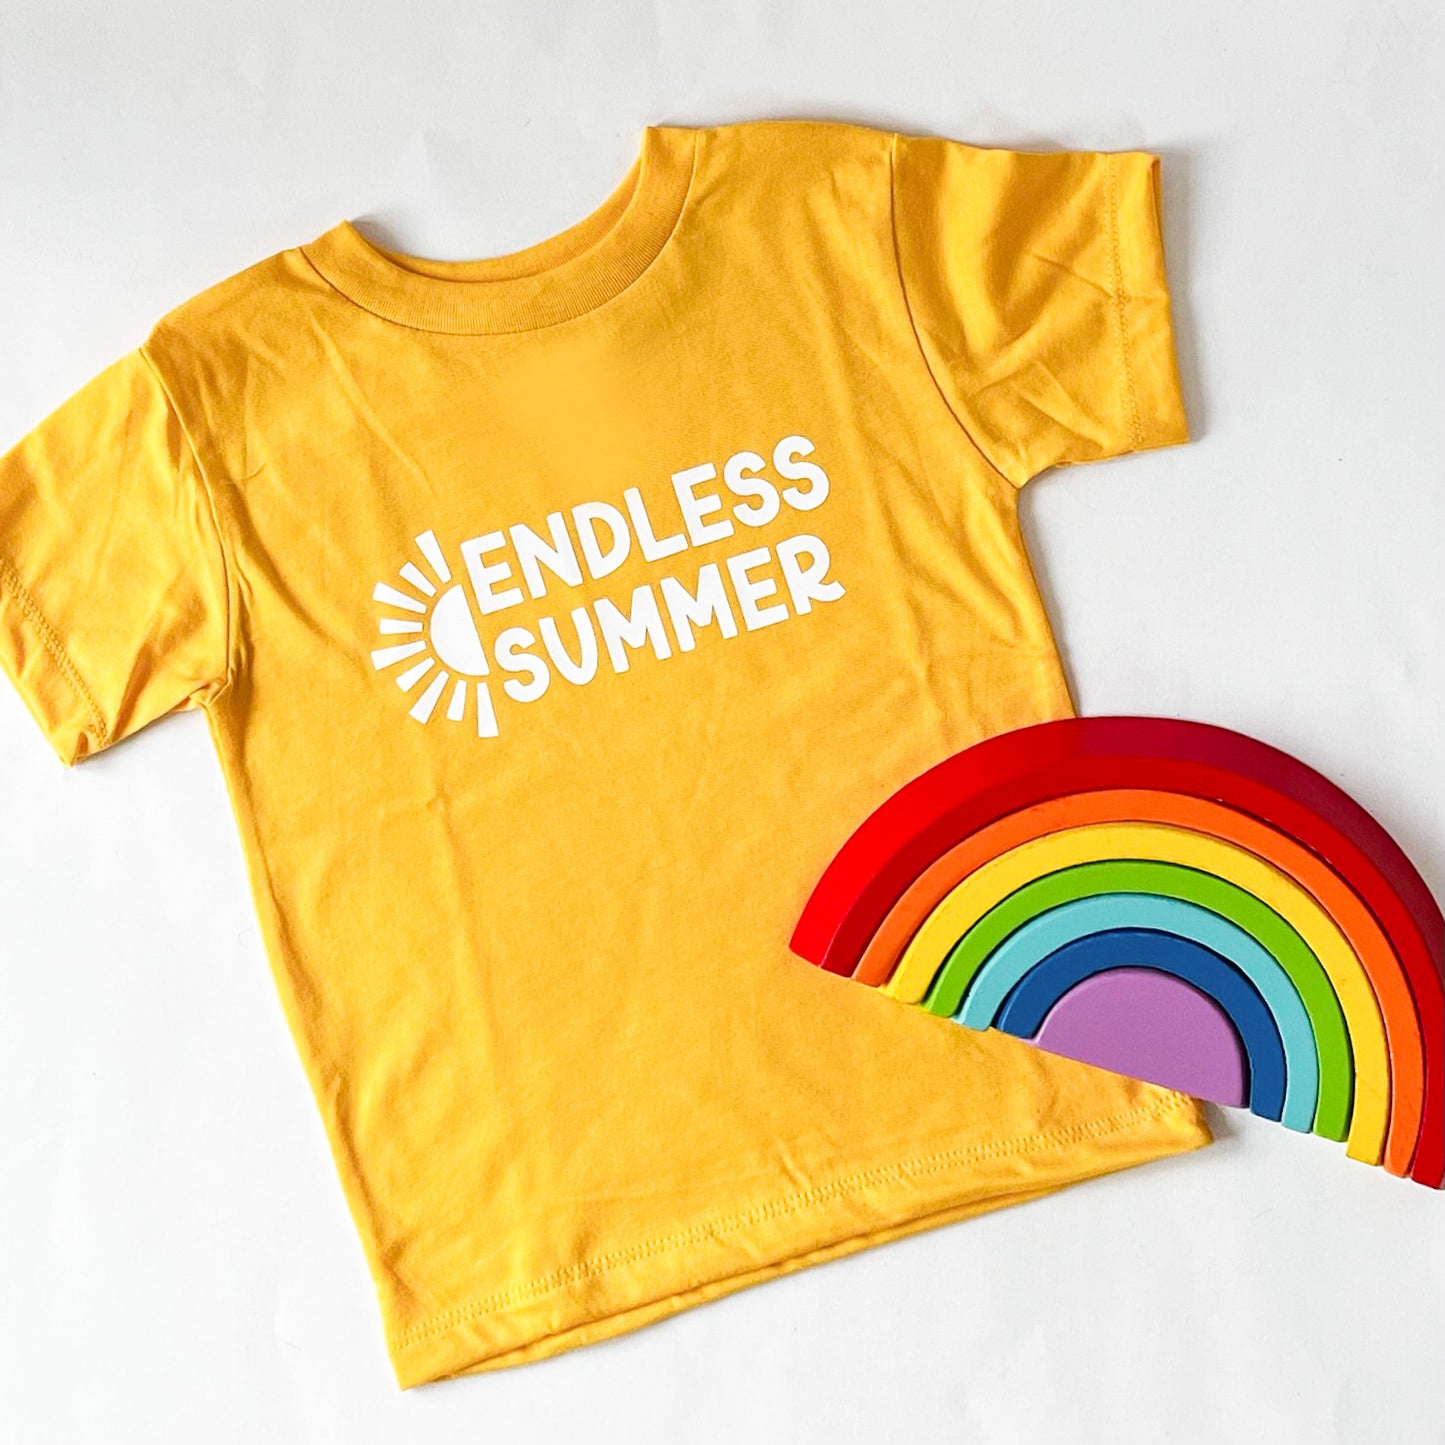 Endless Summer Kids Shirt